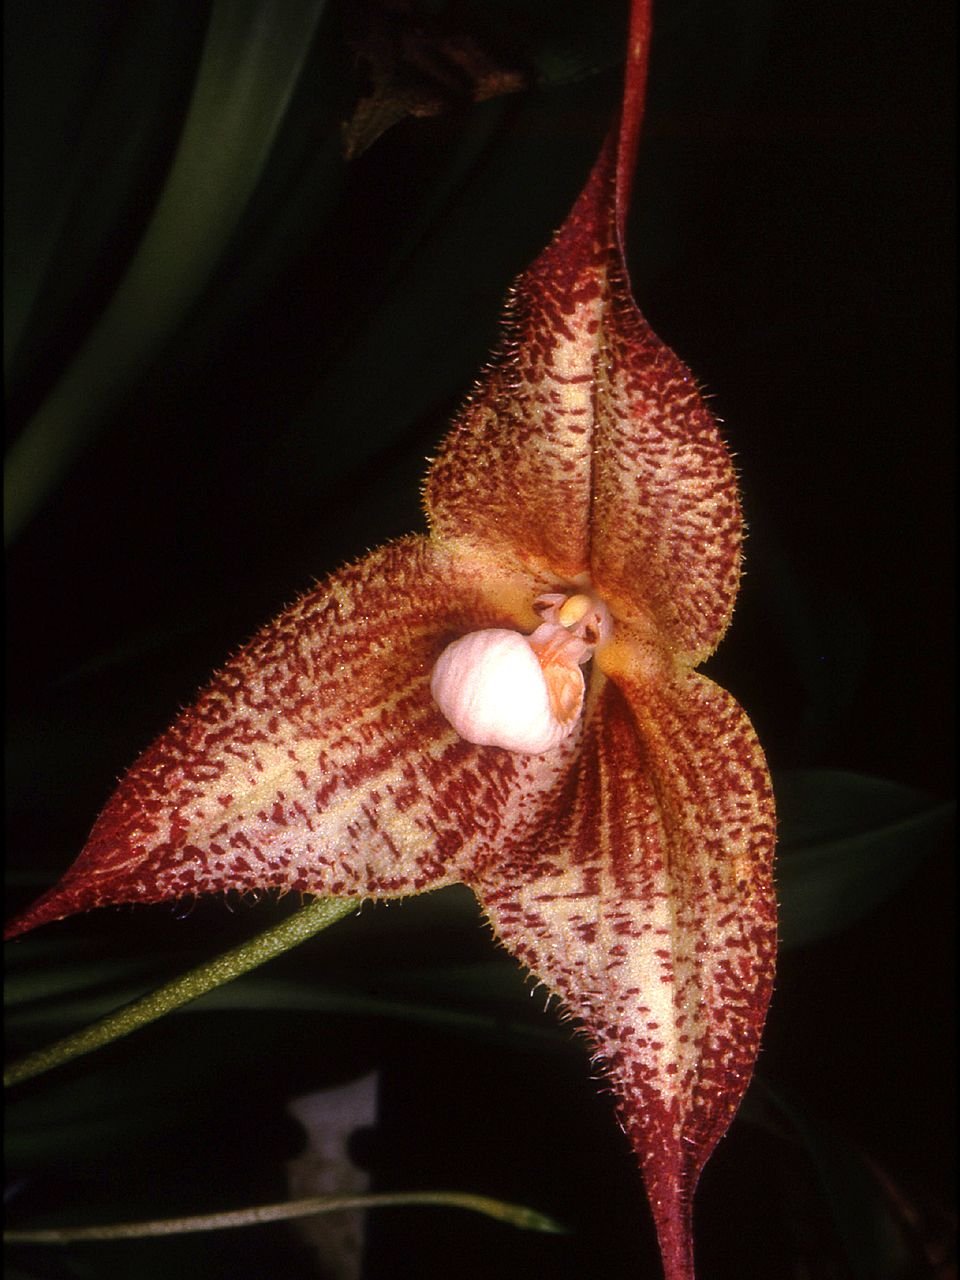 orhideya-drakula-foto-opisanie-vidy-vyrashhivanie-v-domashnih-usloviyah-4